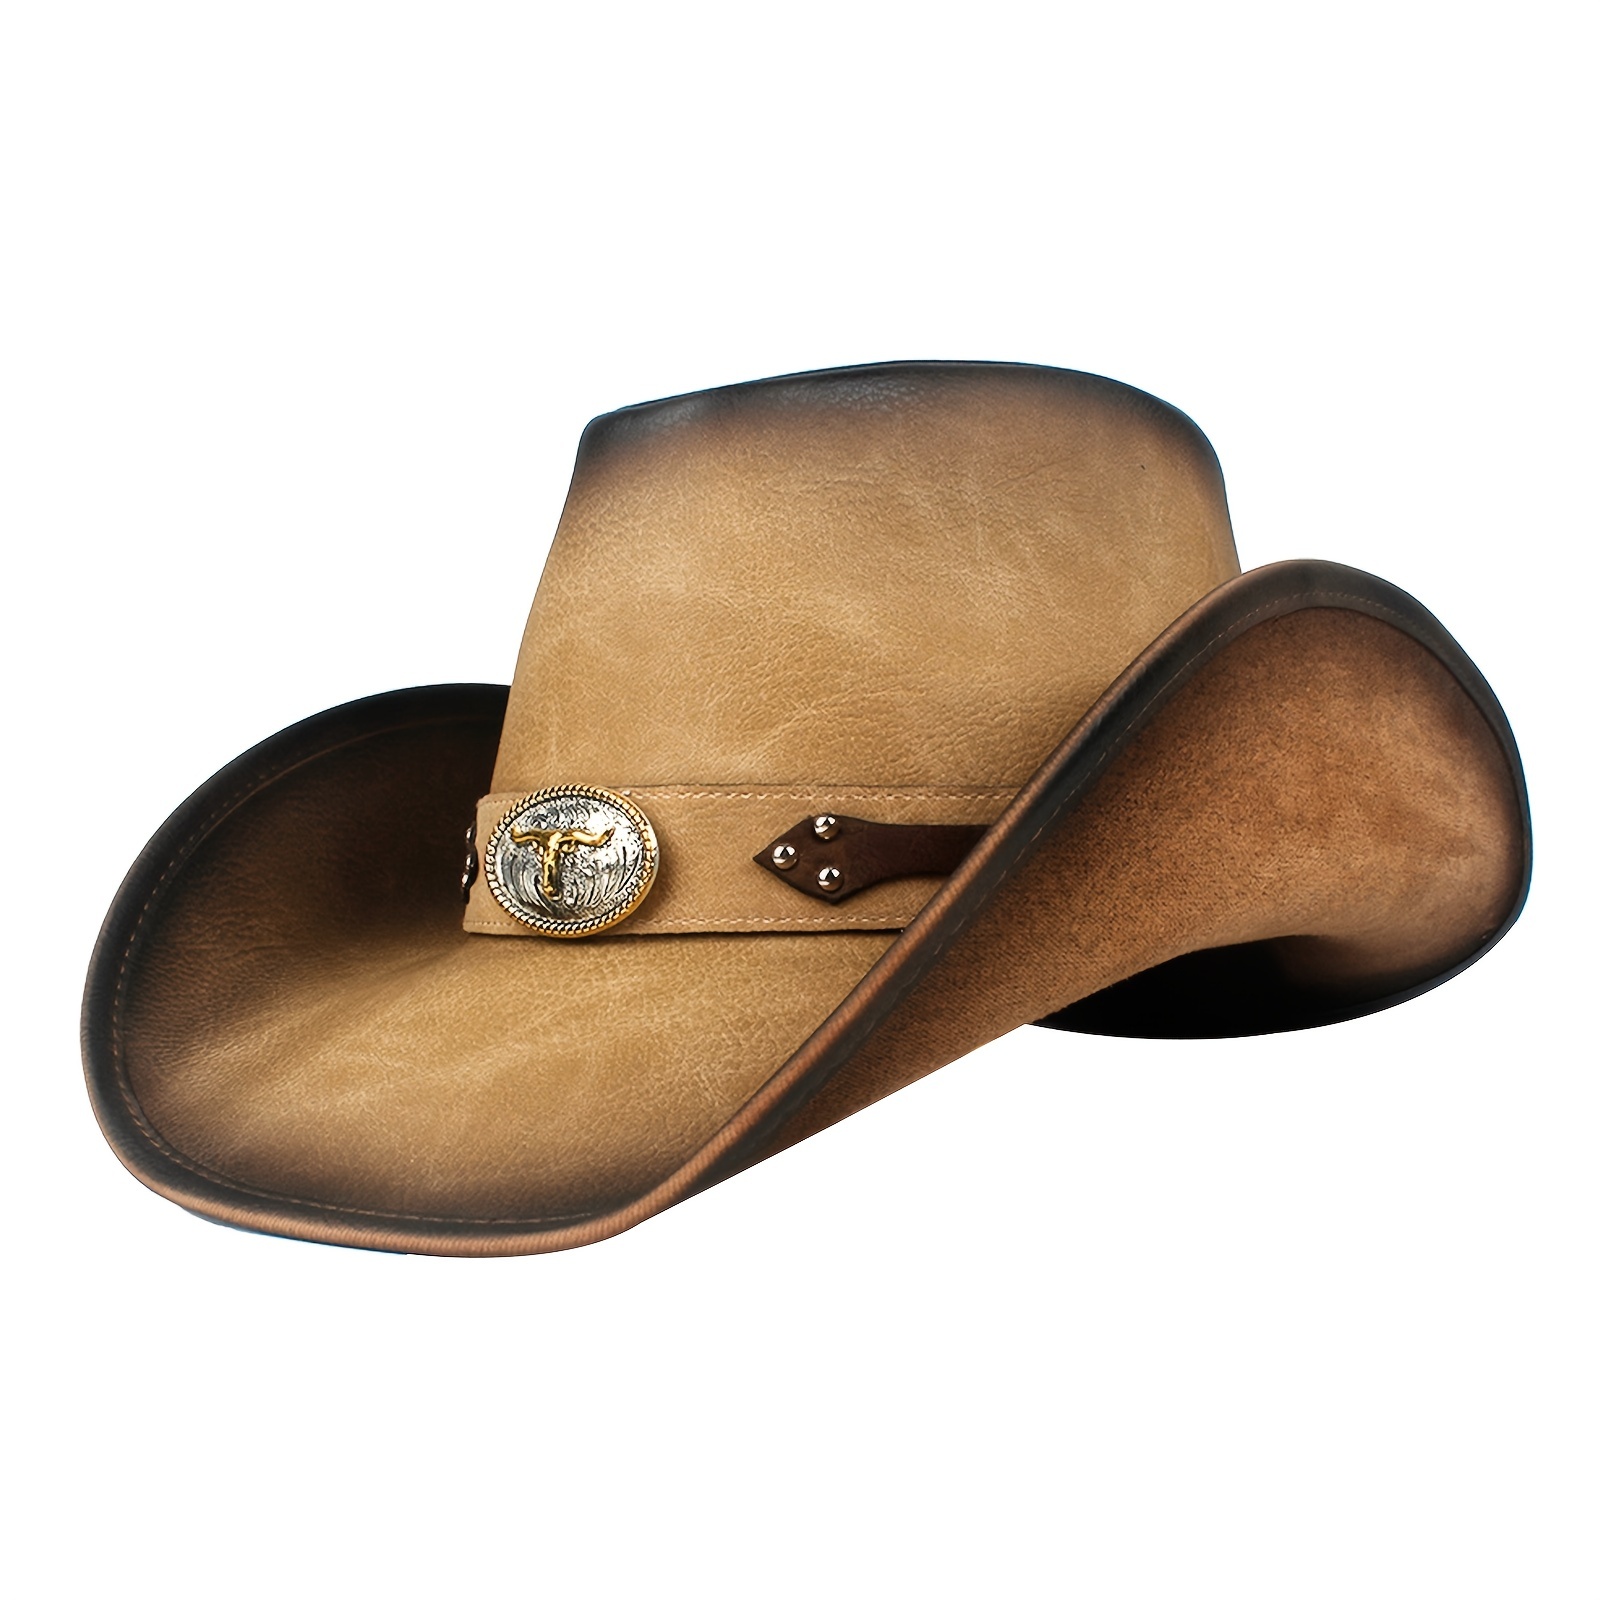 Brown Felt Cowboy Hats for Kids, 3 Pack